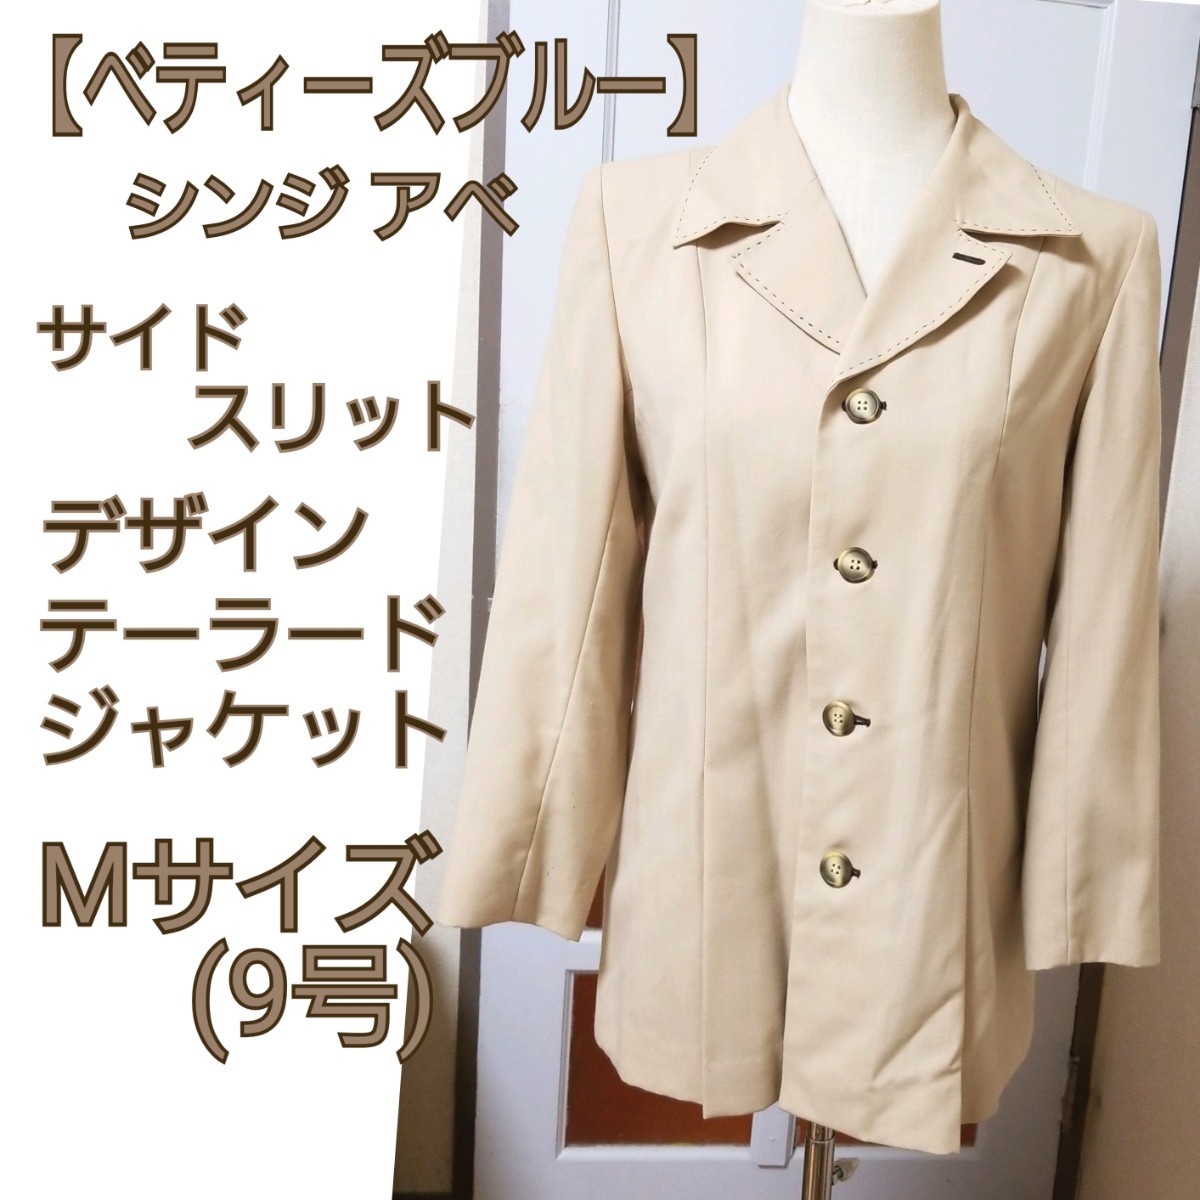 【ベティーズブルー】シンジアベ ベージュ ロング テーラードジャケット Mサイズ/9号 スーツ オフィス フォーマル